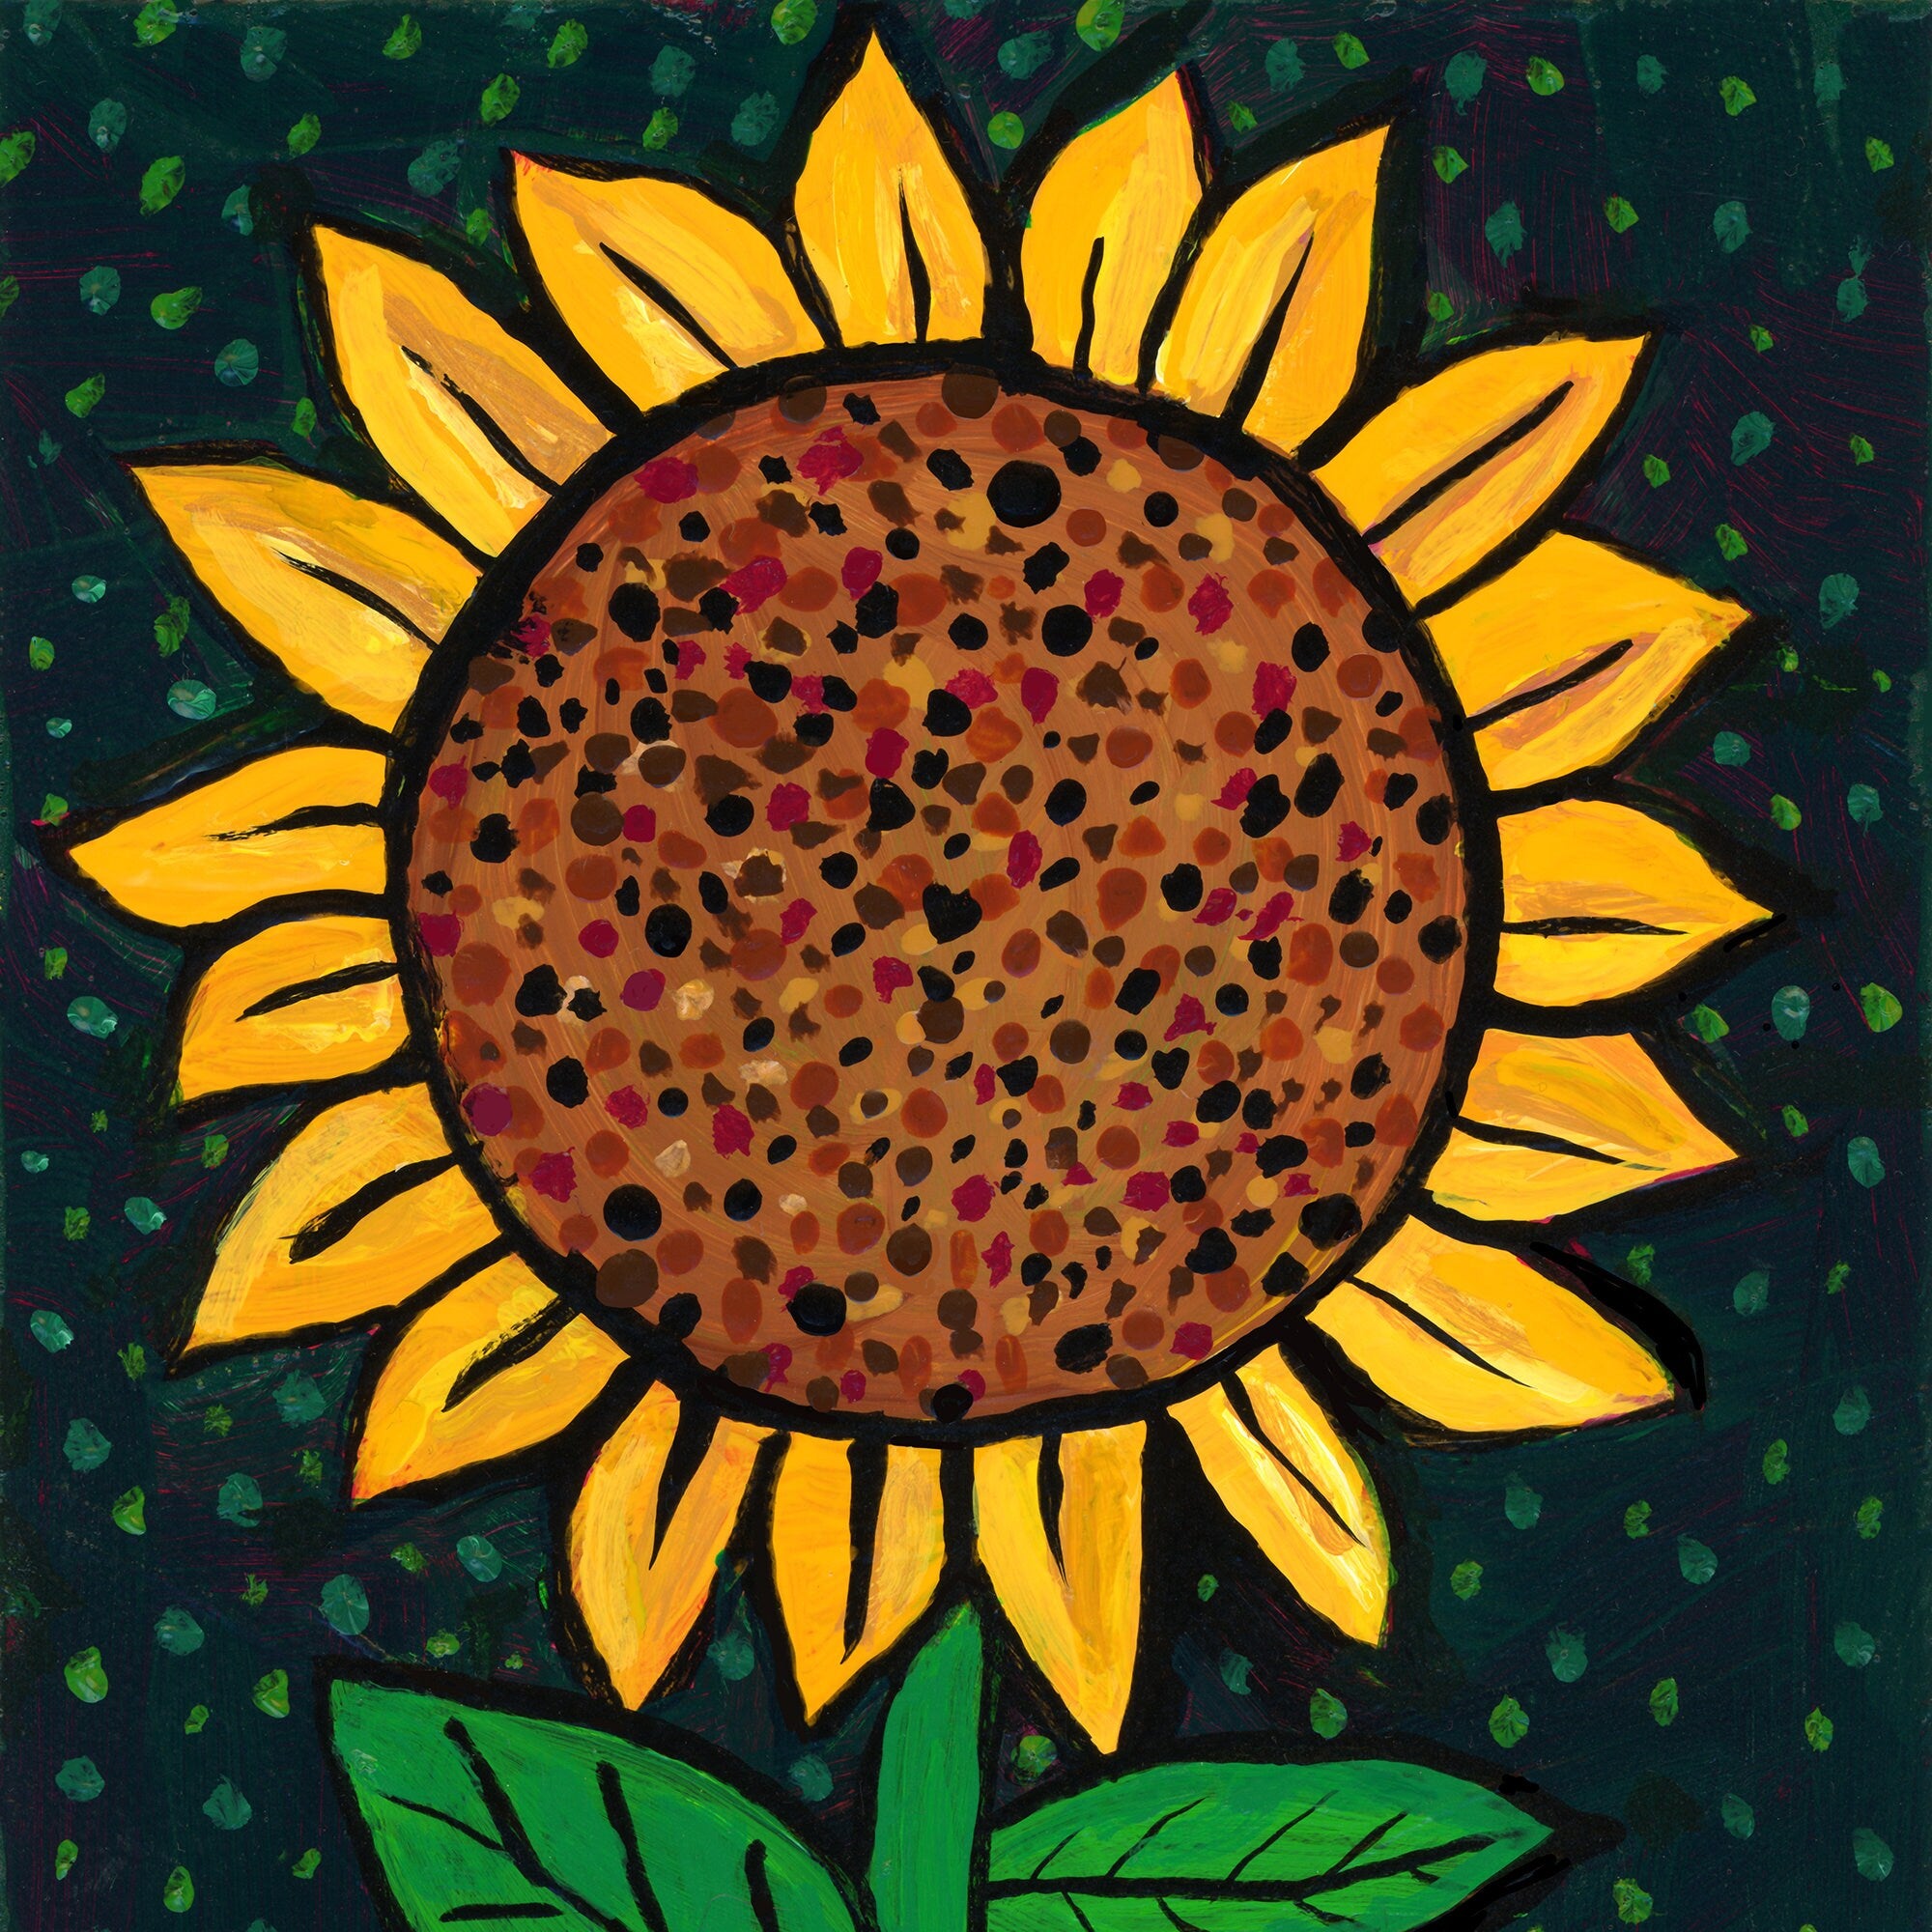 Framed Sunflower Painting - Sun Flower Art - Whimsical Flower Painting in Frame - 5 x 7 inches